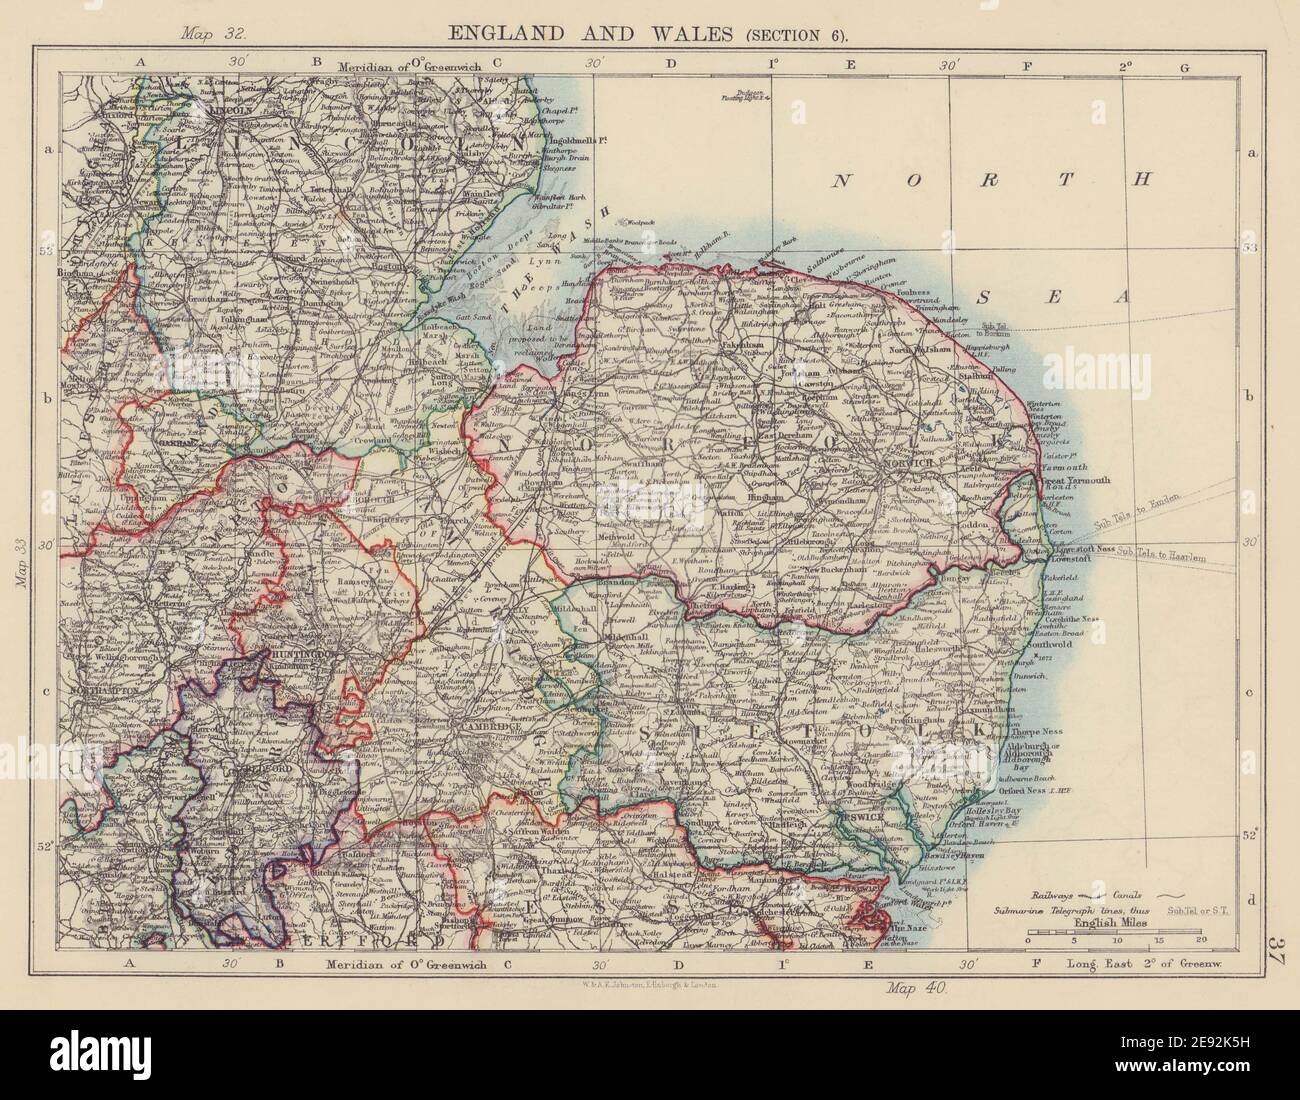 INGLATERRA DEL ESTE. East Anglia/Midlands Norfolk Suffolk Cambridgeshire 1901 mapa antiguo Foto de stock